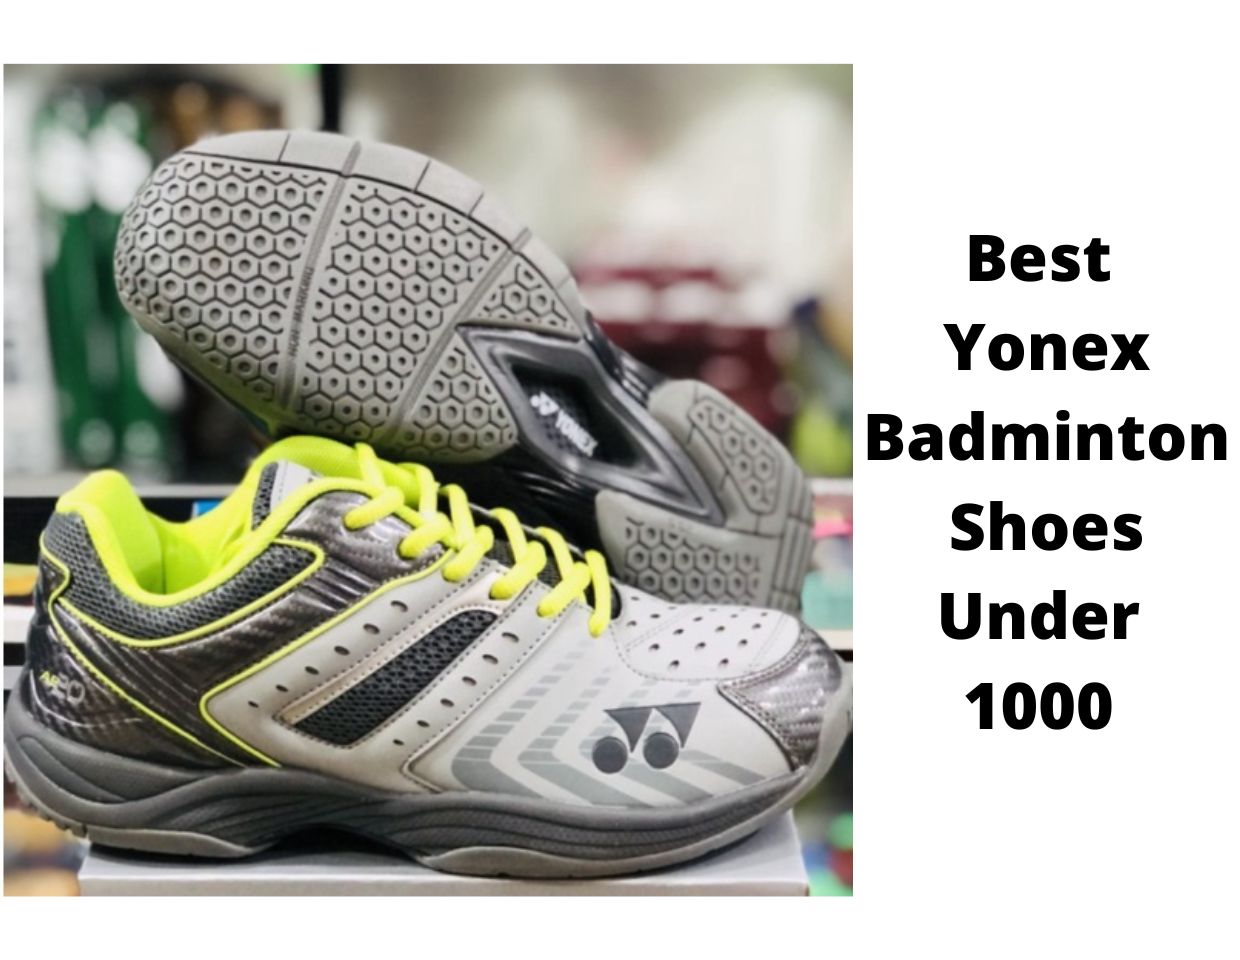 Best Yonex Badminton Shoes Under 1000